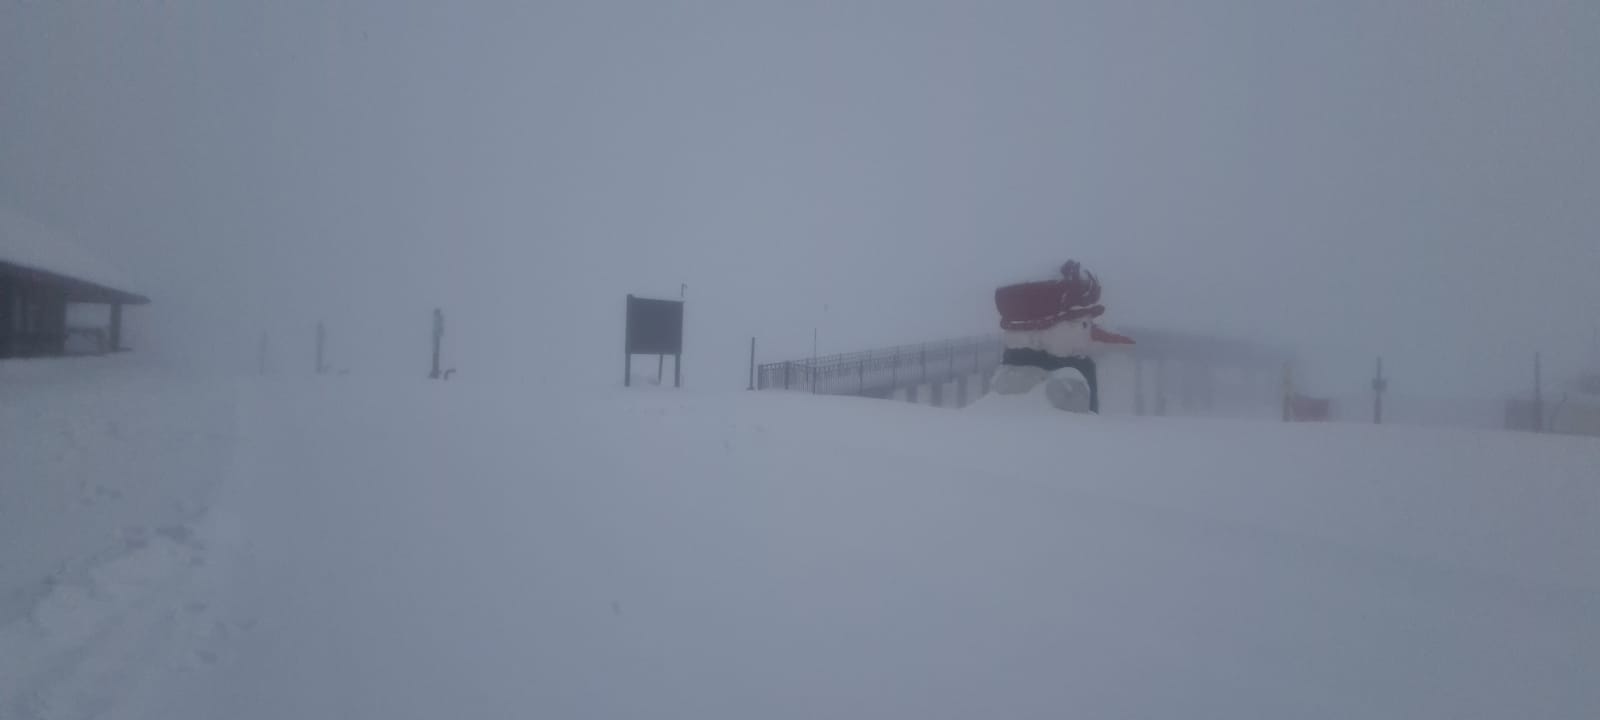 אתר החרמון: 30 במה שלג נערמו במפלס התחתון